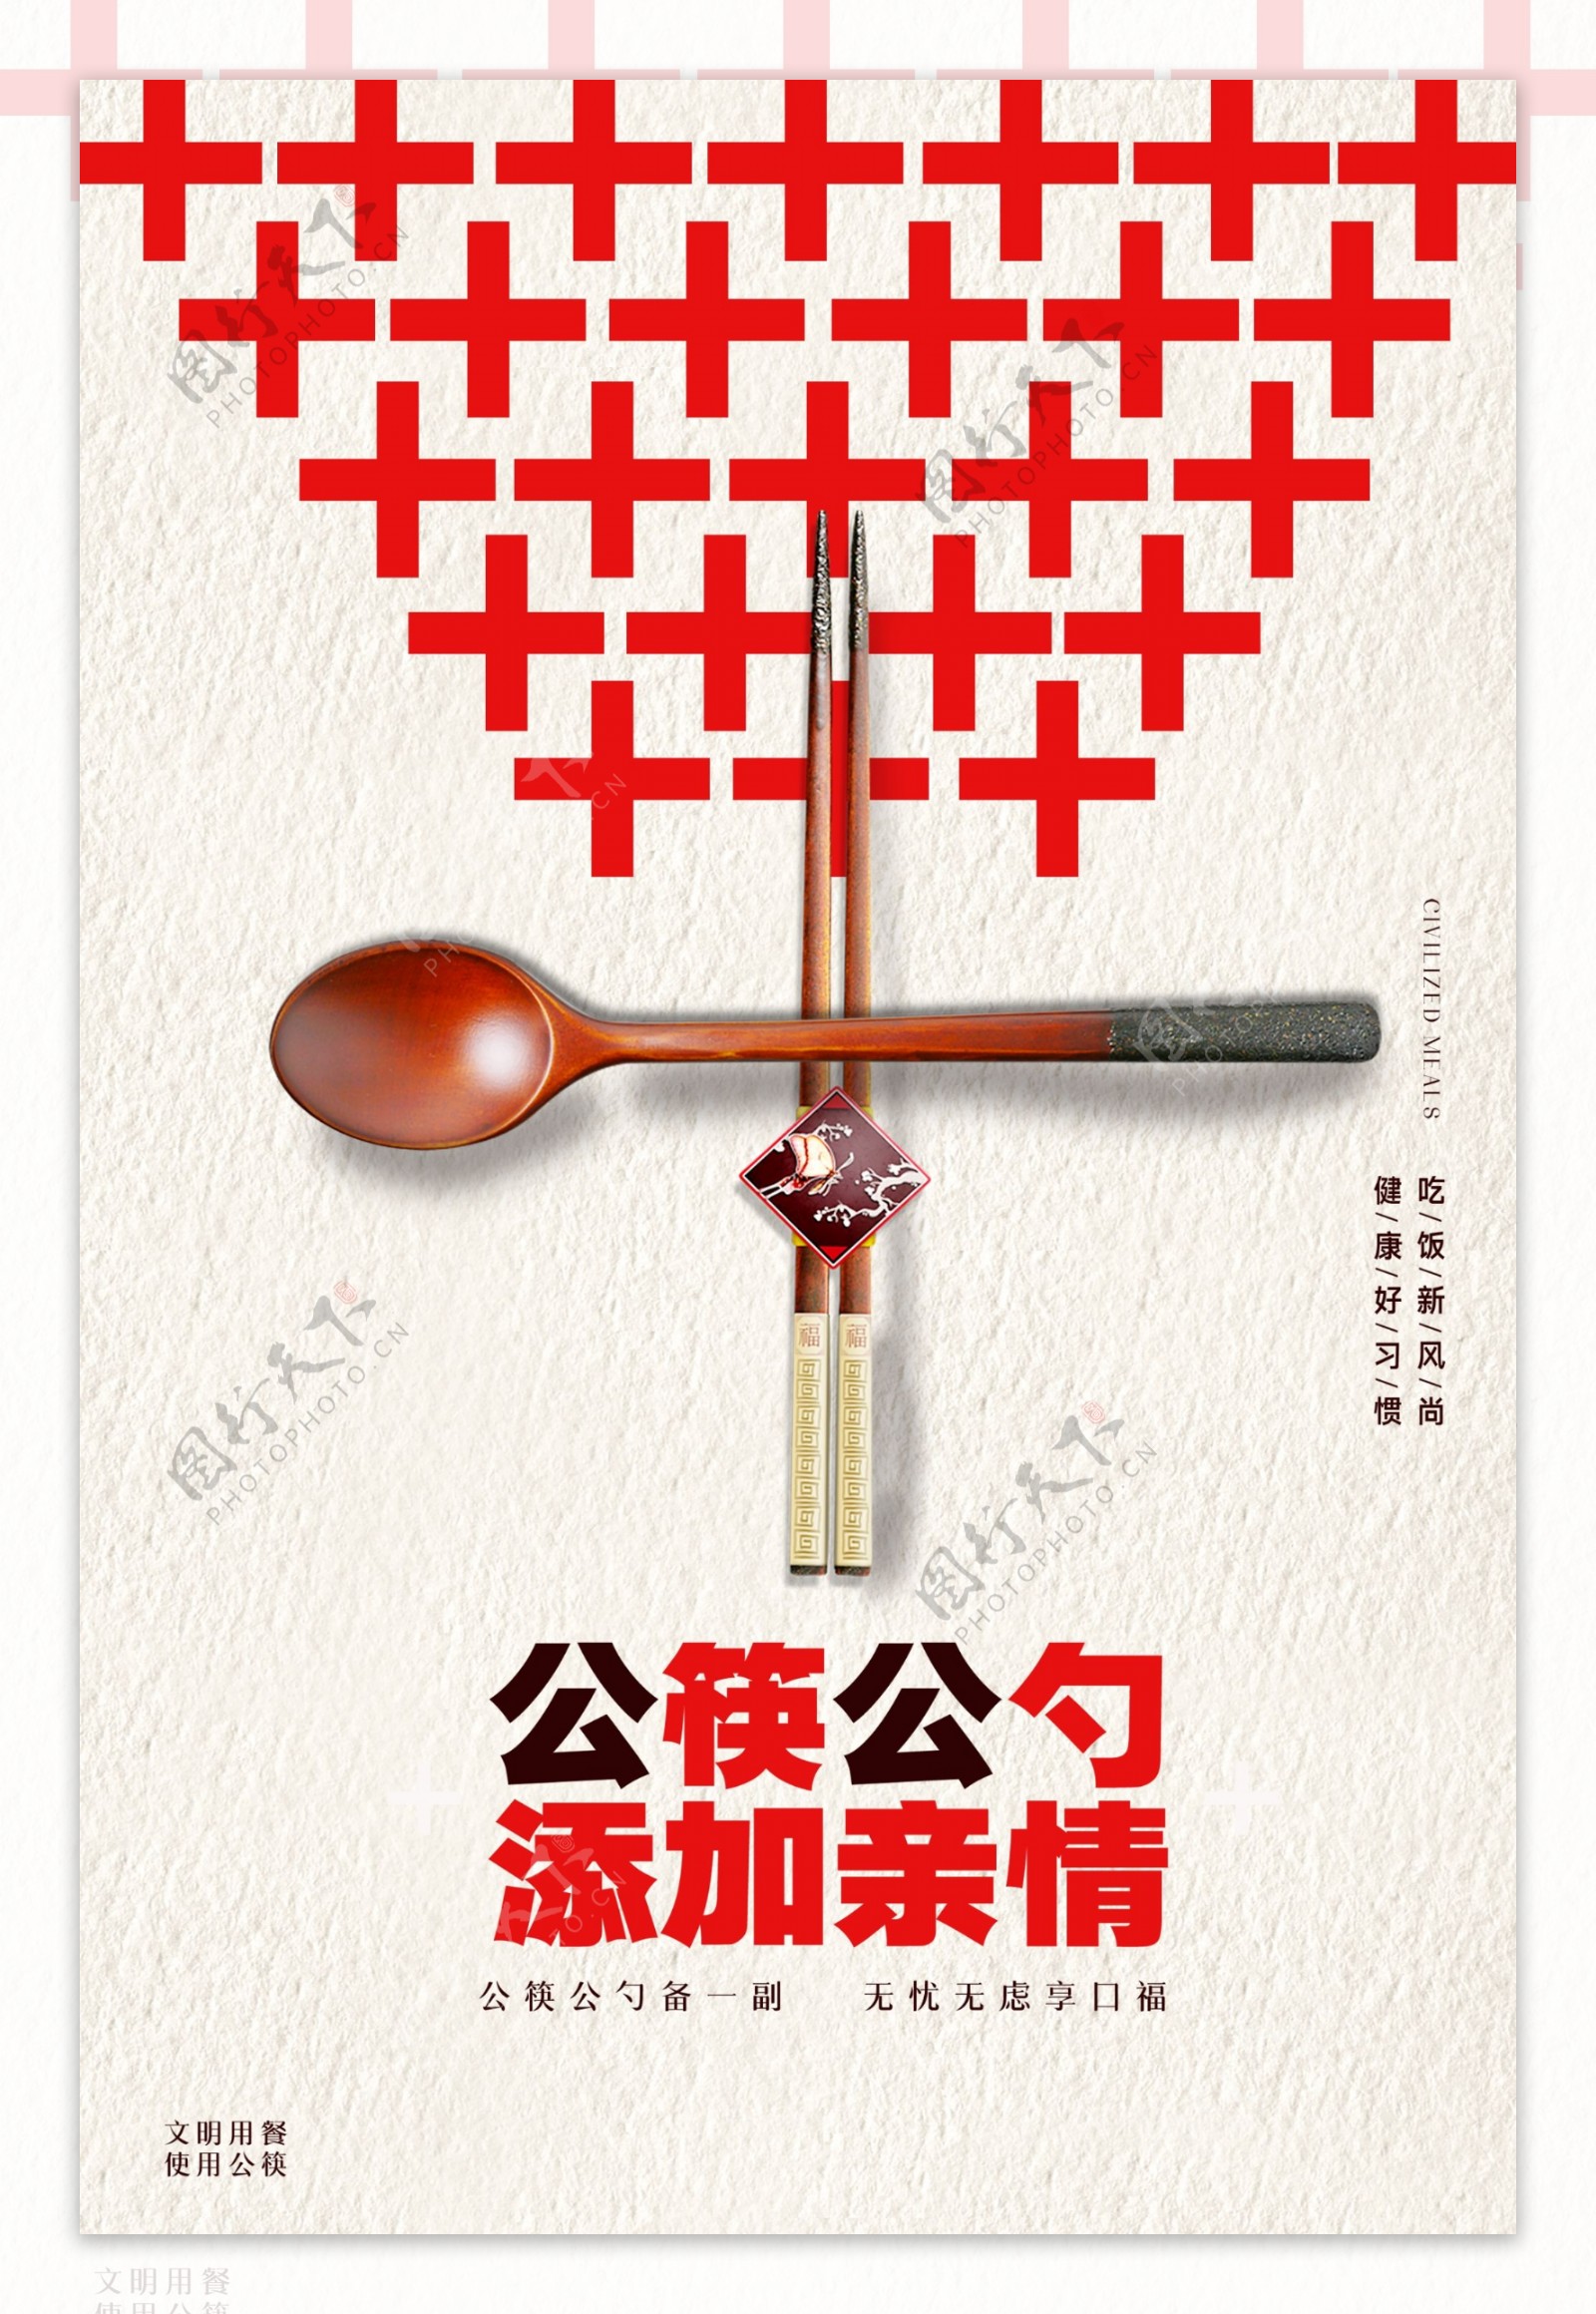 公筷公勺添加亲情宣传海报